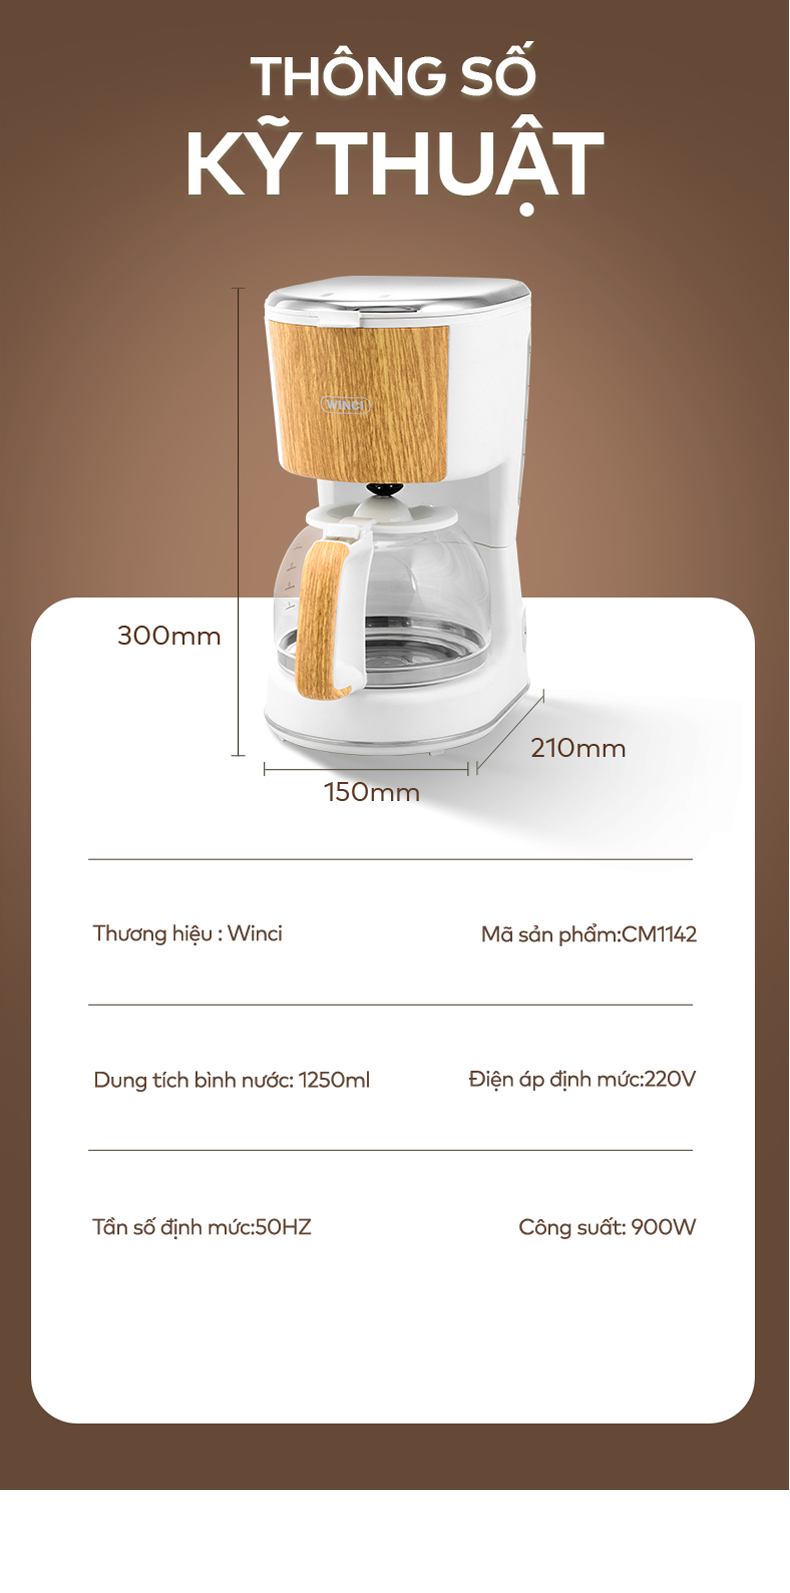 Thông số kỹ thuật của máy pha cà phê Drip Winci CM1142